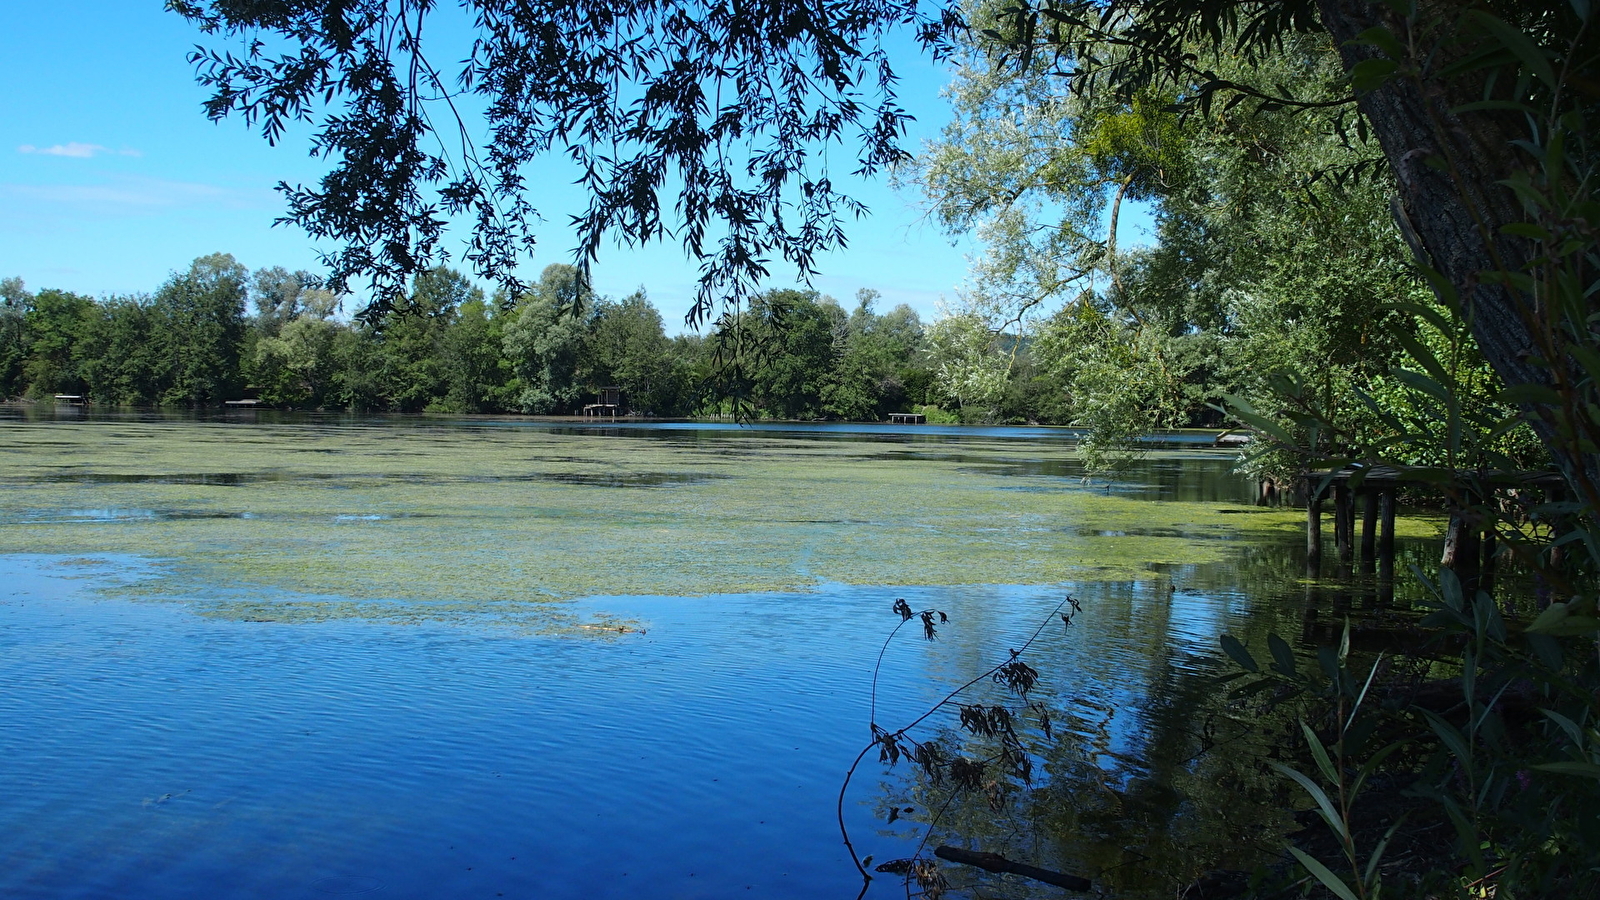 Retrouve les 29 balises dissimulées dans le cadre naturel des étangs de Villeneuve